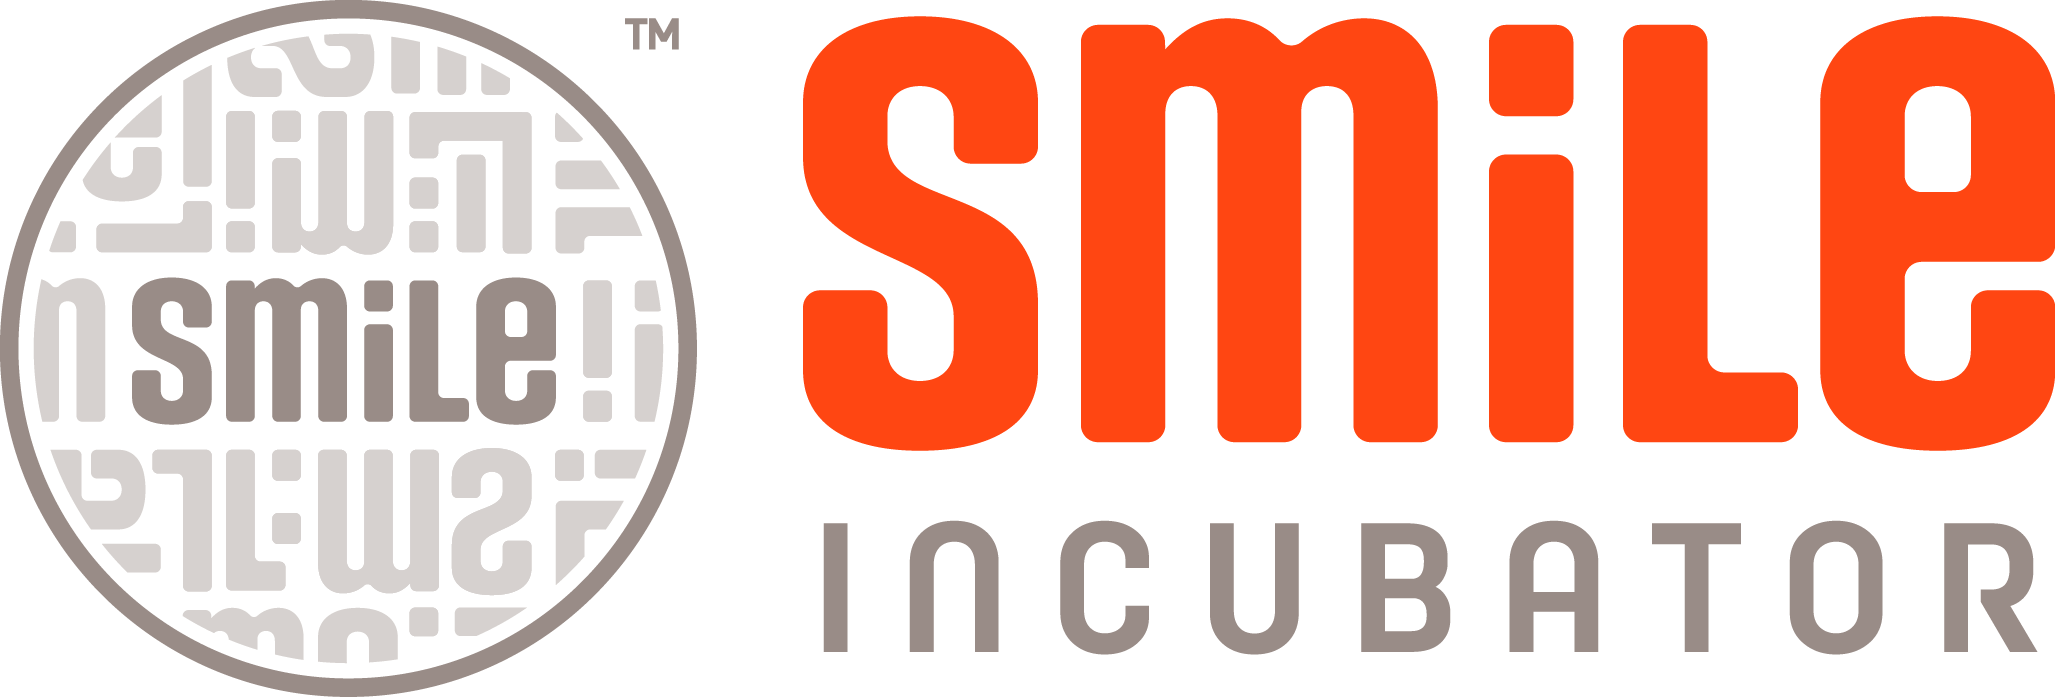 Smile-logo